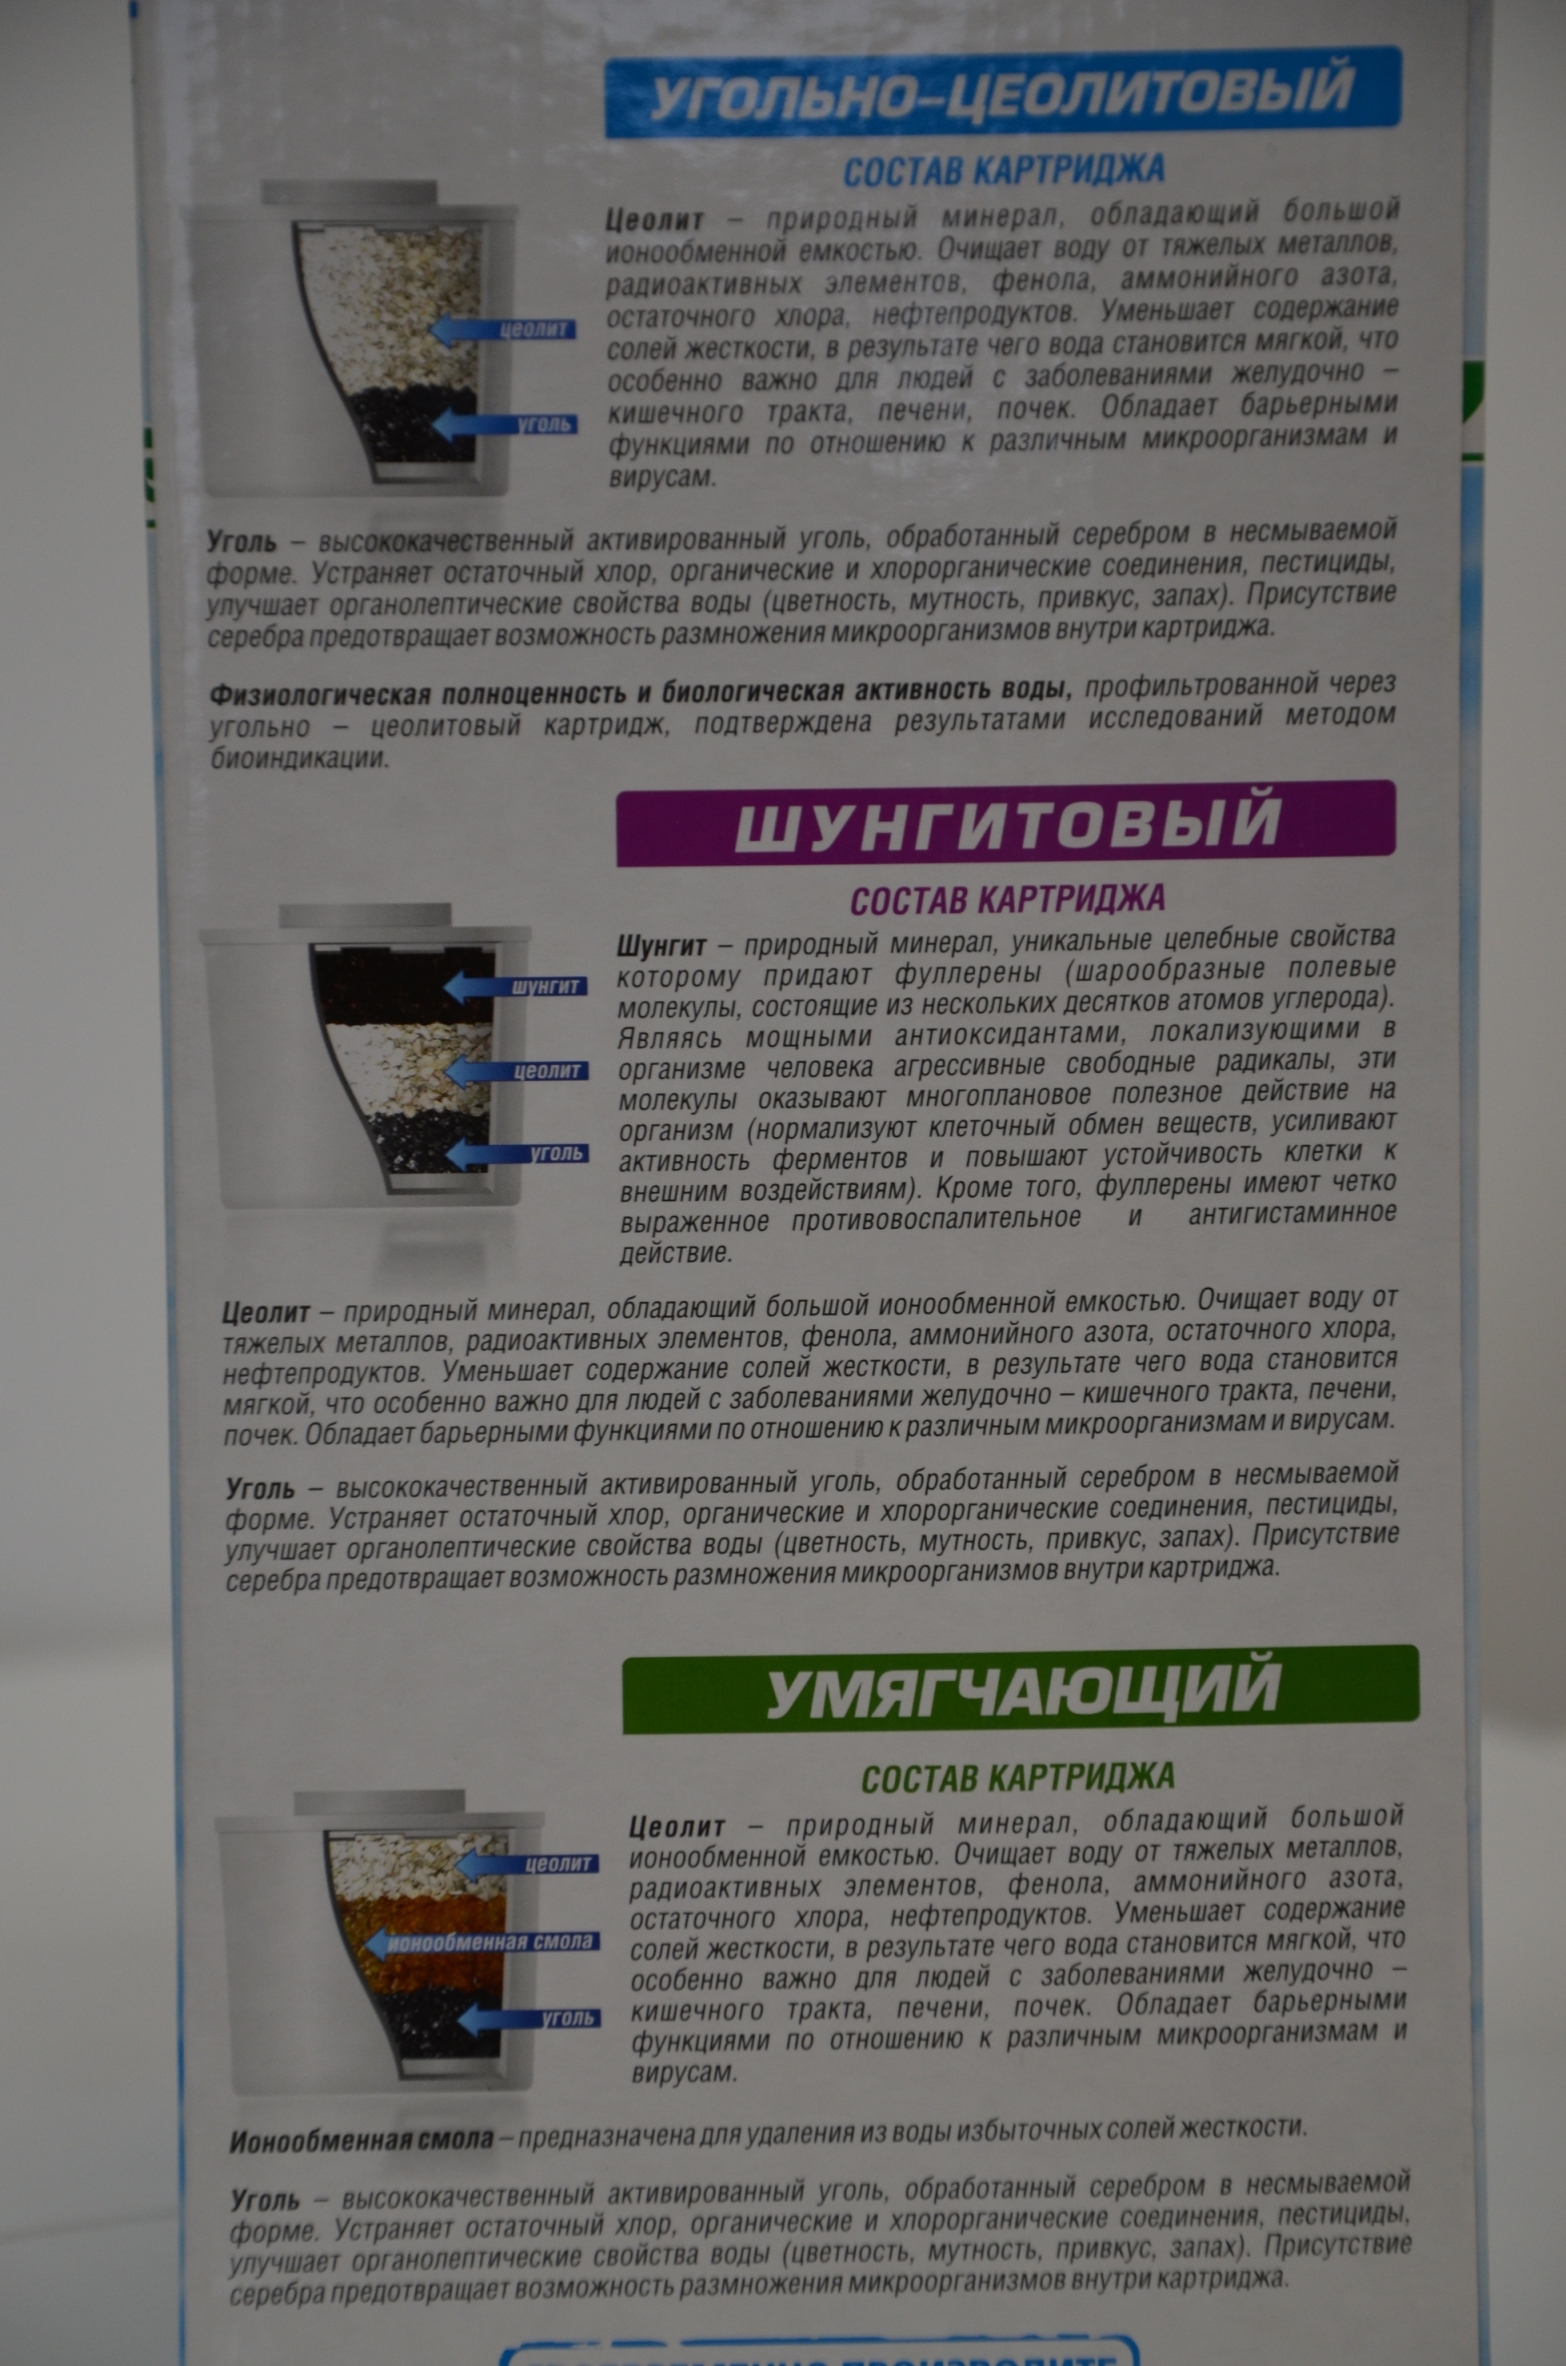 Купить фильтр водолей в Екатеринбурге доставка арго